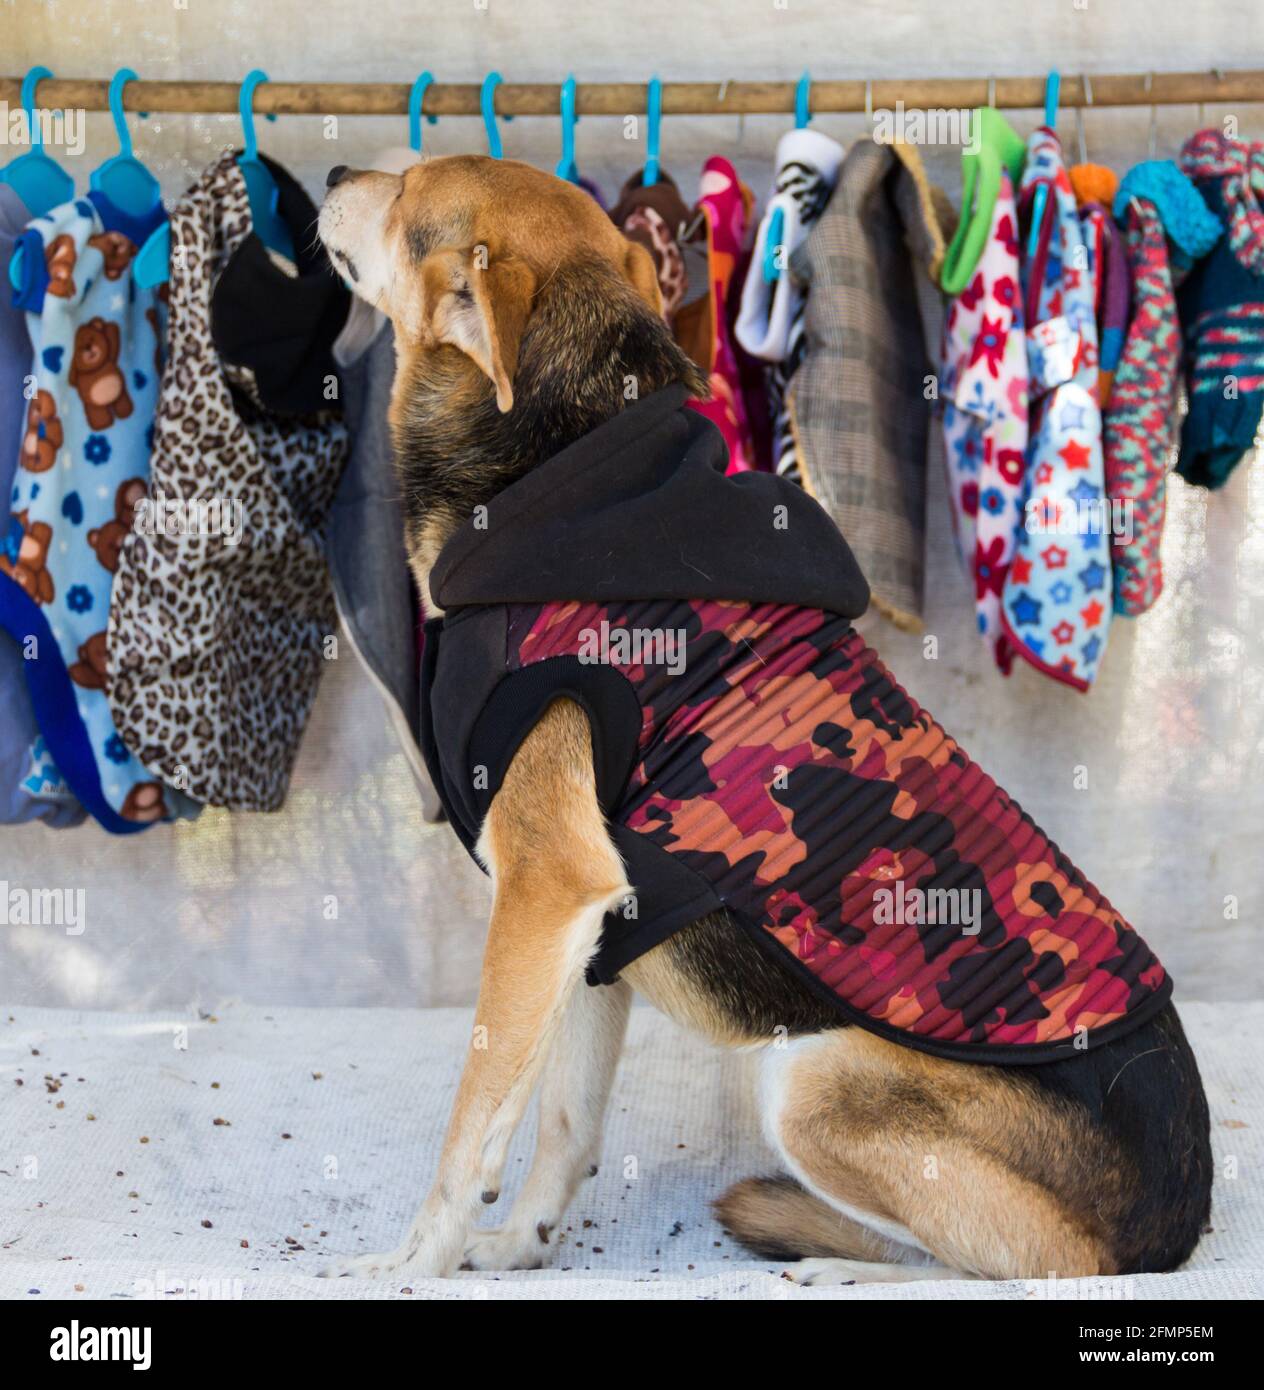 perro tratando de ropa en la tienda de ropa para de Alamy